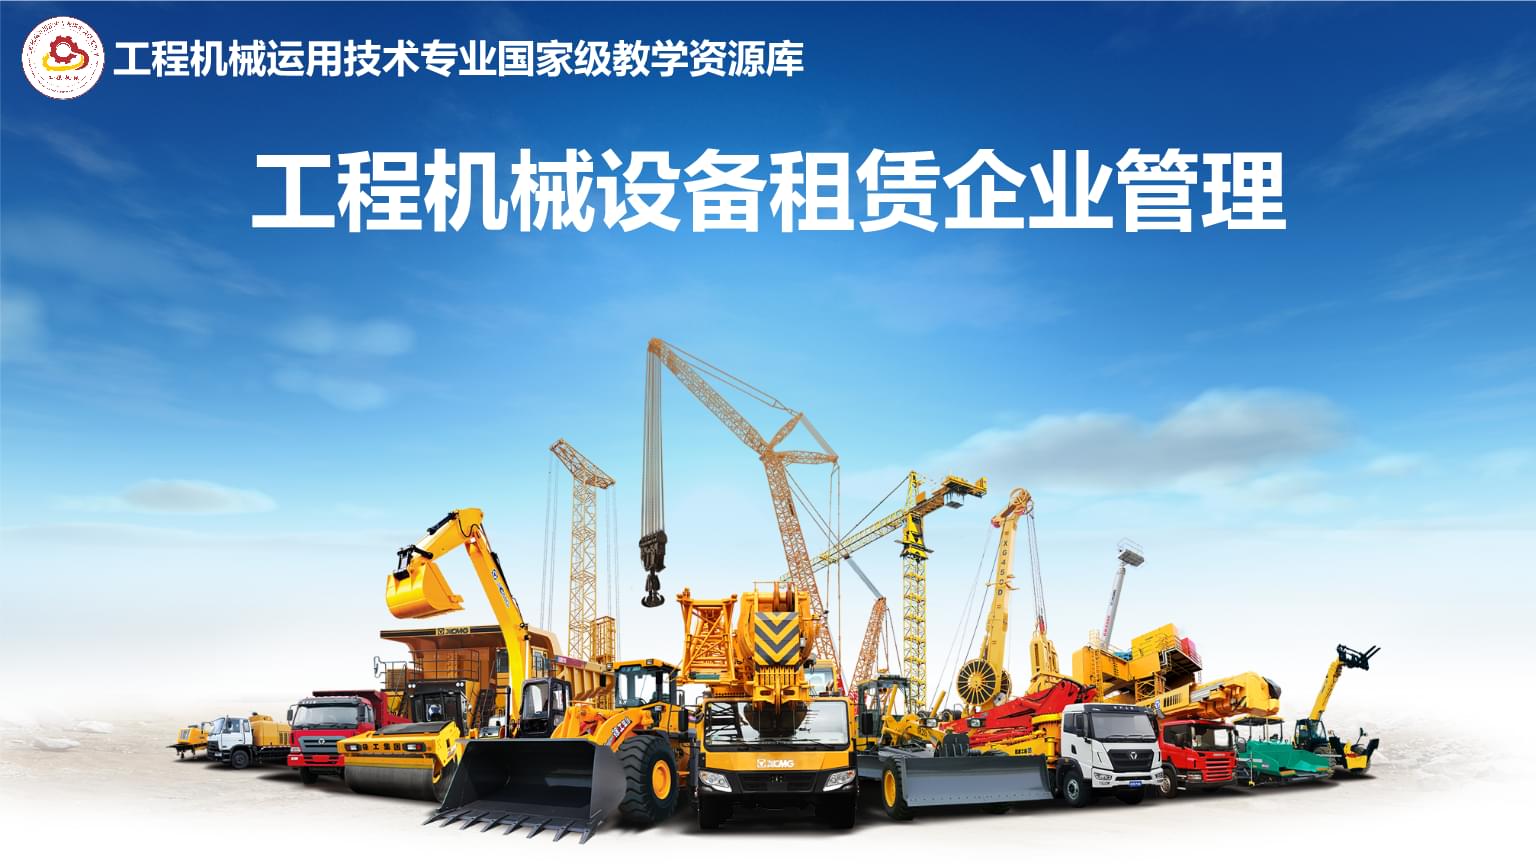 2leyu70vip019年中国工程机械租赁市场规模达到XX亿元侧重分析